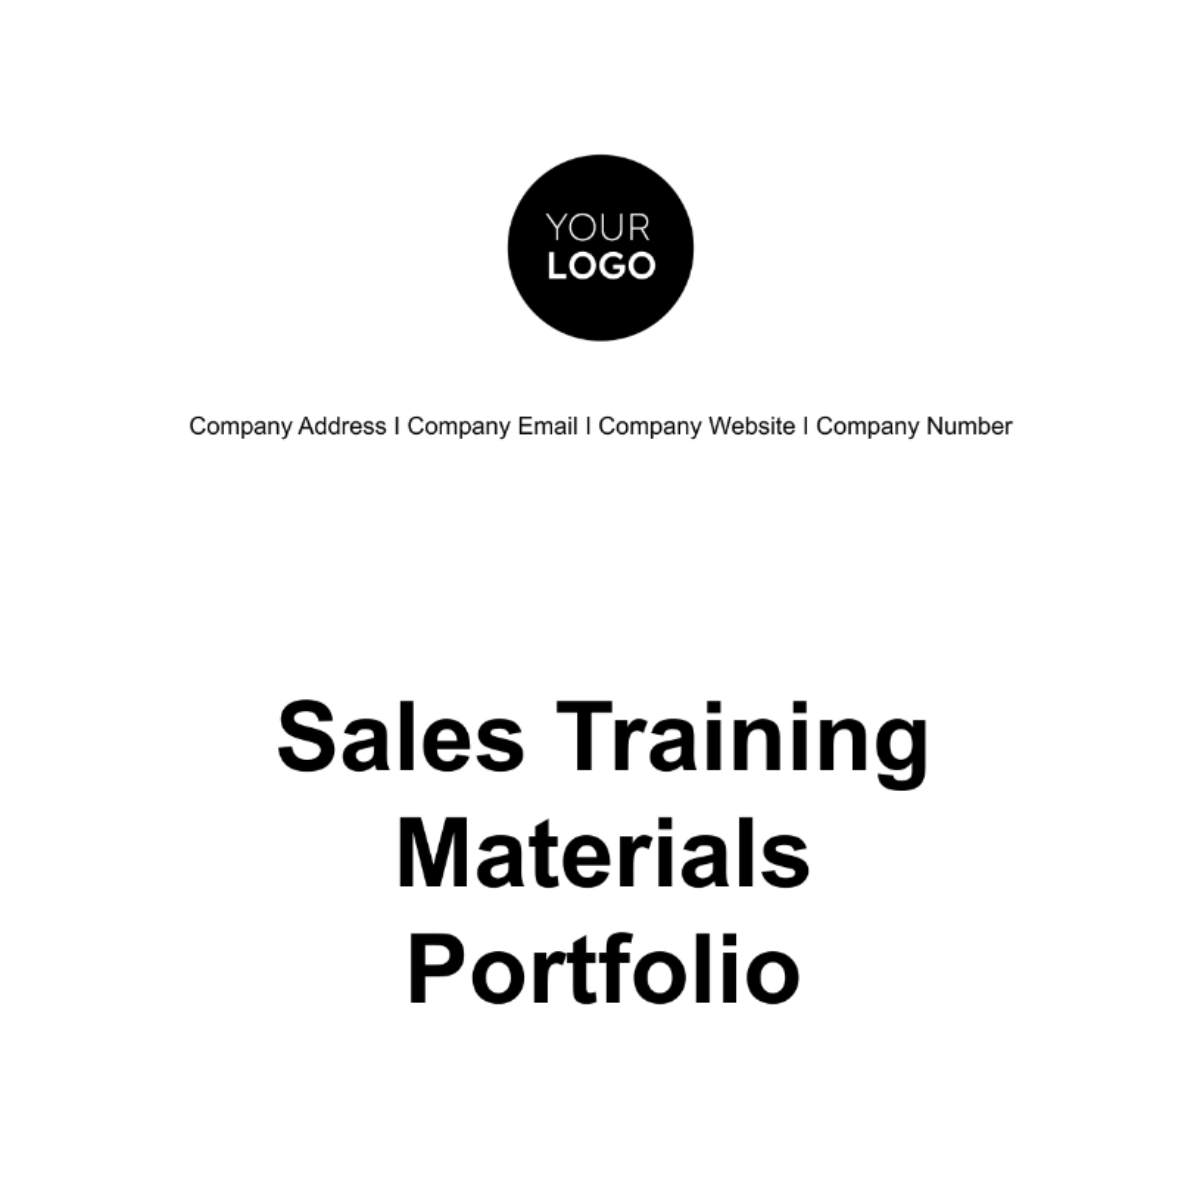 Sales Training Materials Portfolio Template